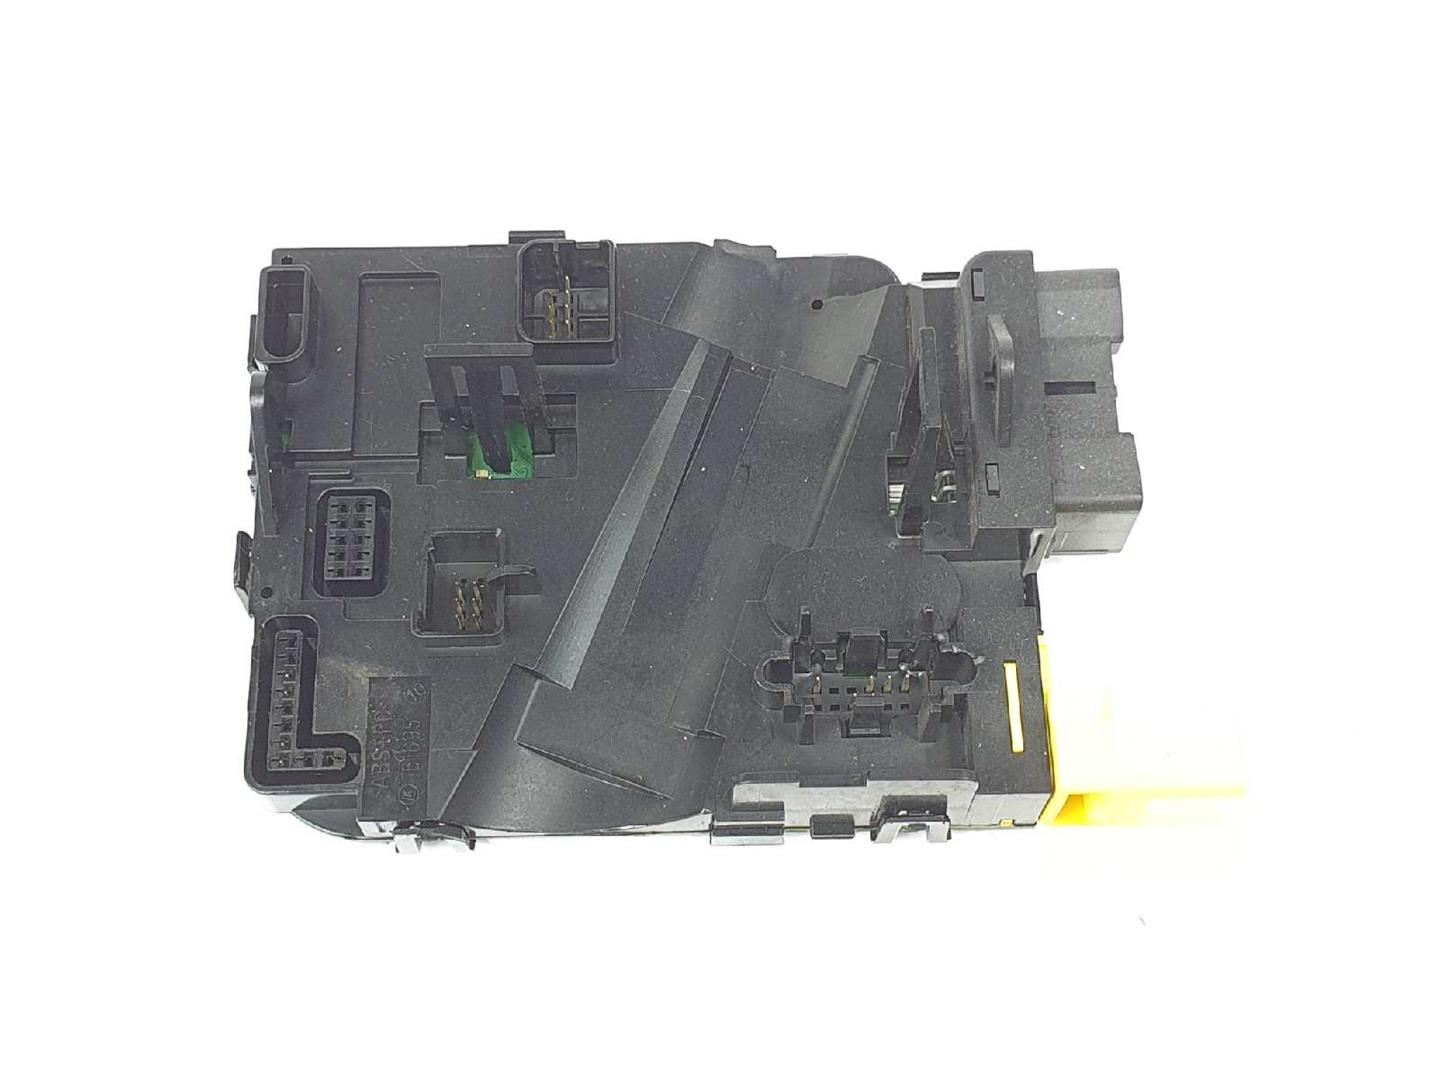 SKODA Octavia 2 generation (2004-2013) Power steering control unit 1K0953549CP, 10003573 19731705